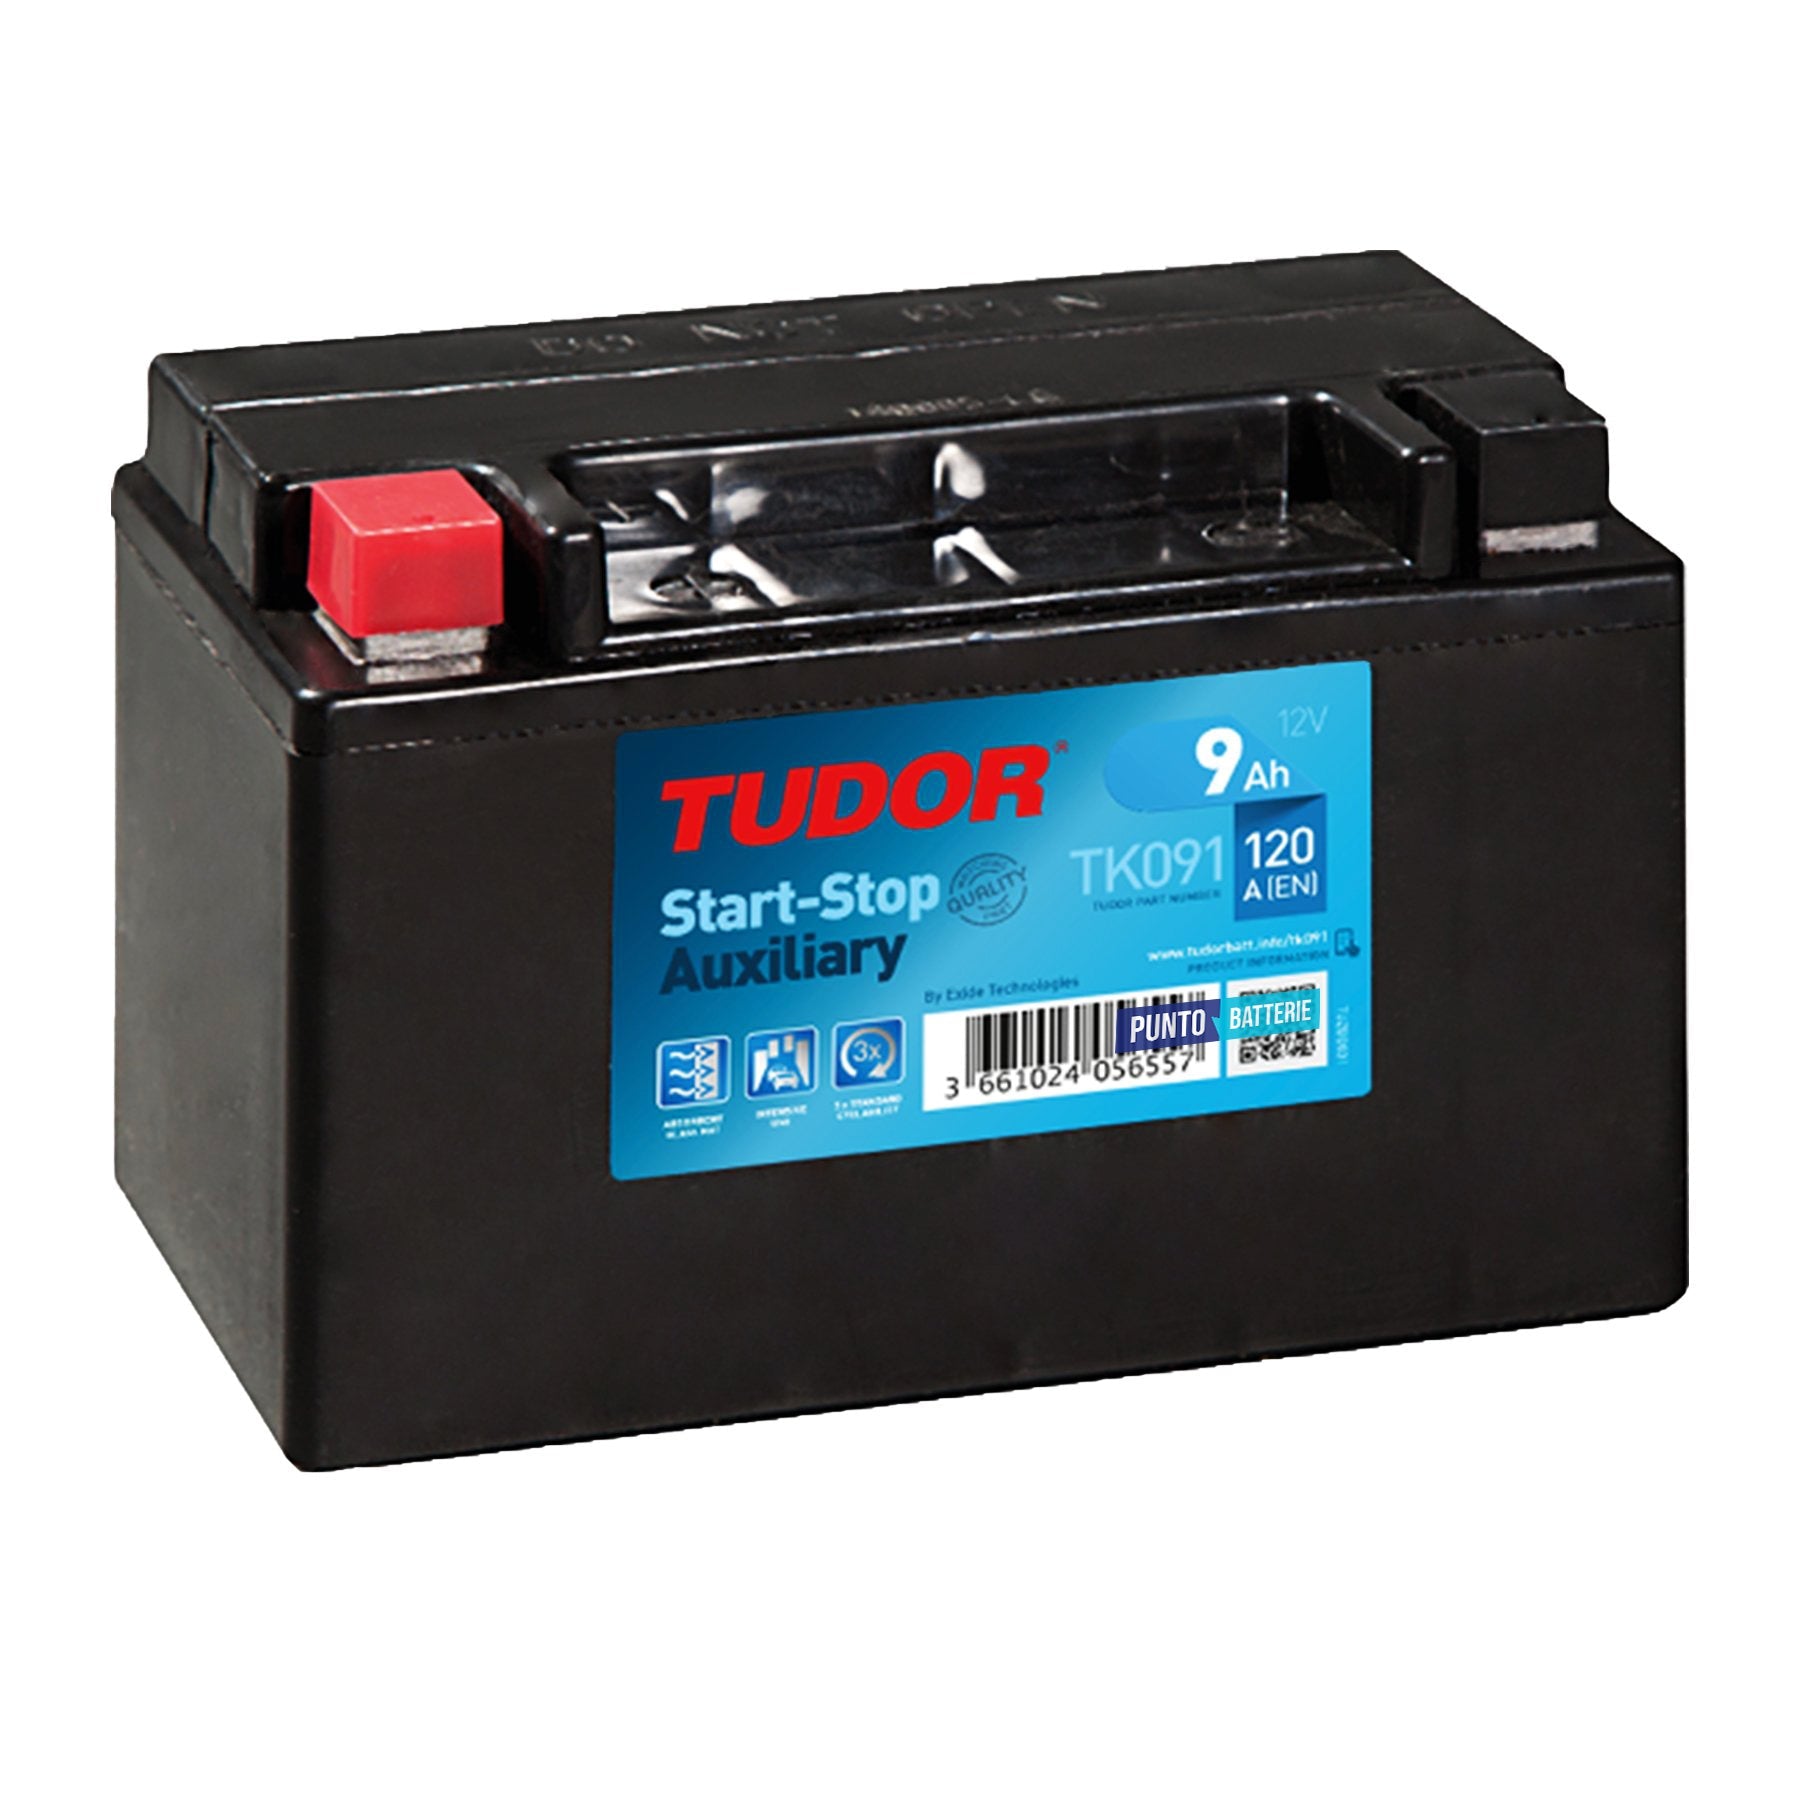 Batterie auto E29 6V 70Ah/300A VARTA Black dynamic, batterie de